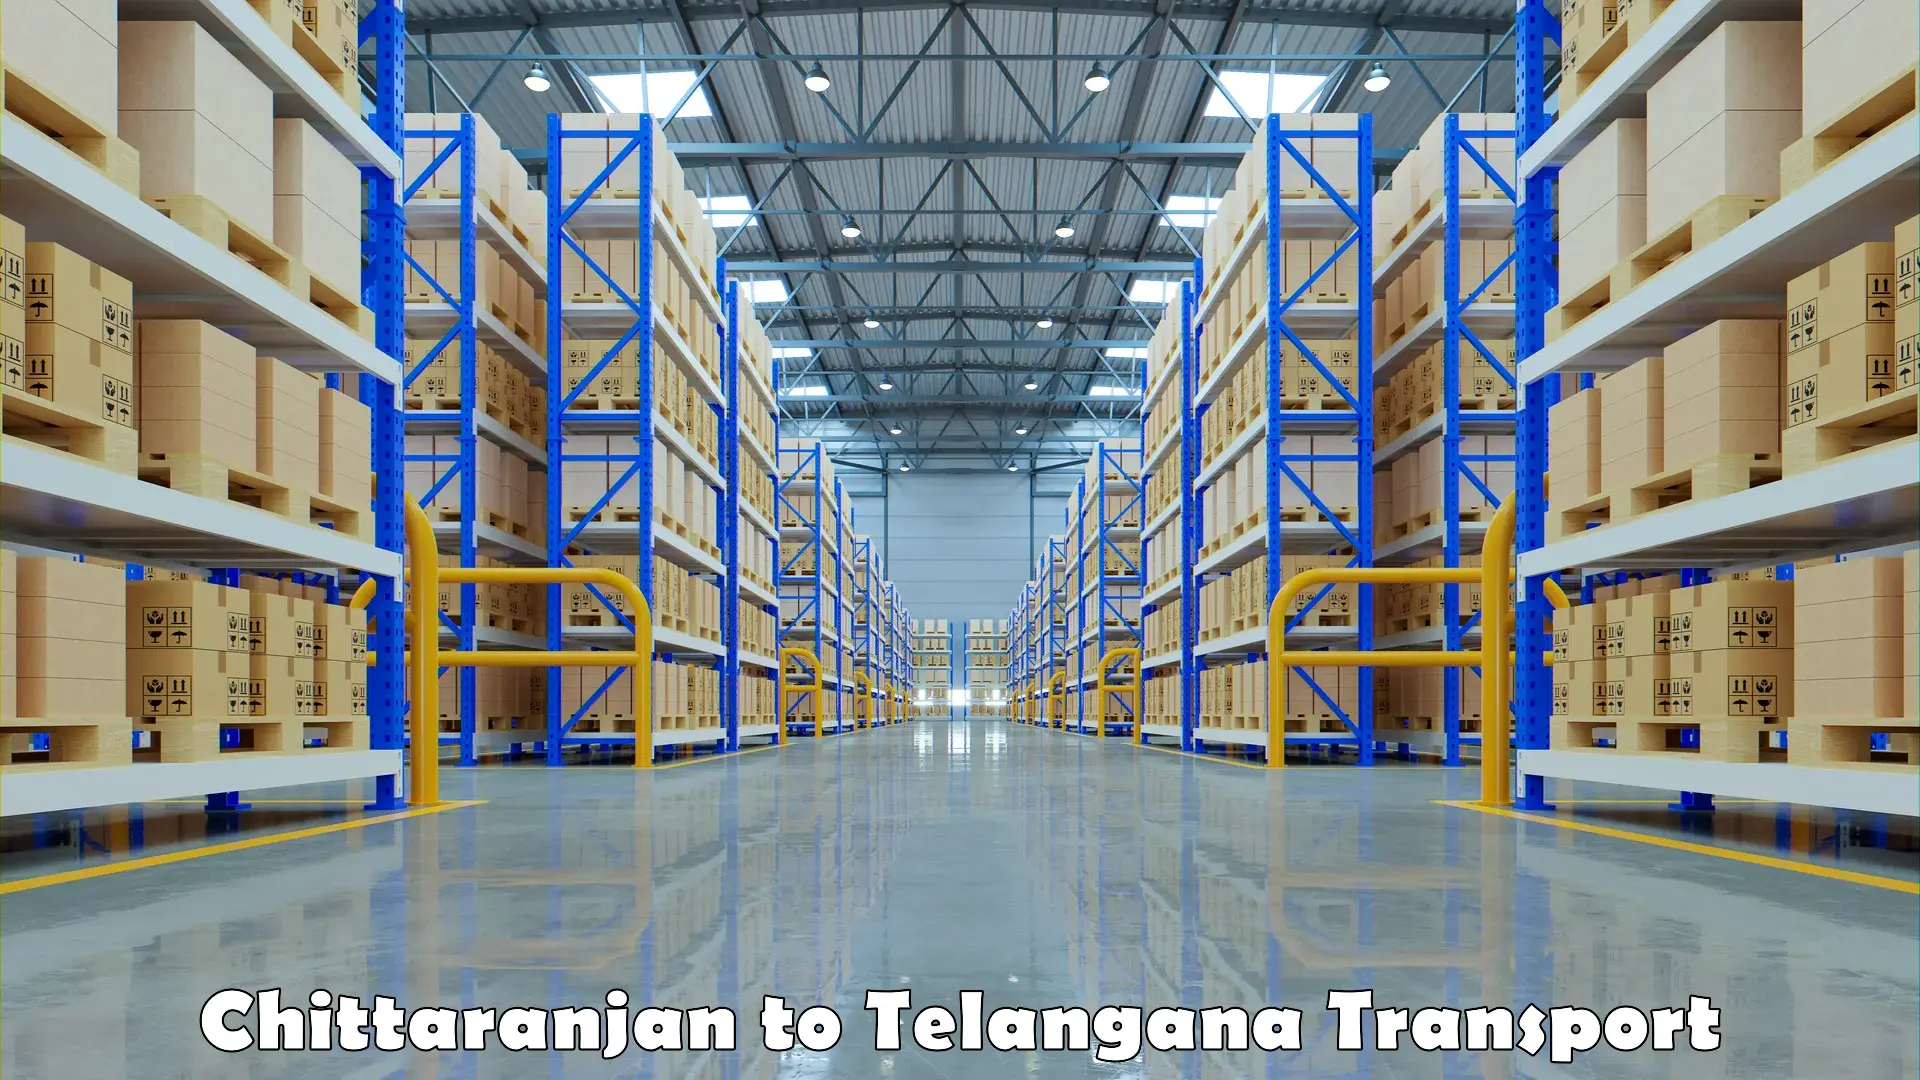 Express transport services Chittaranjan to Telangana